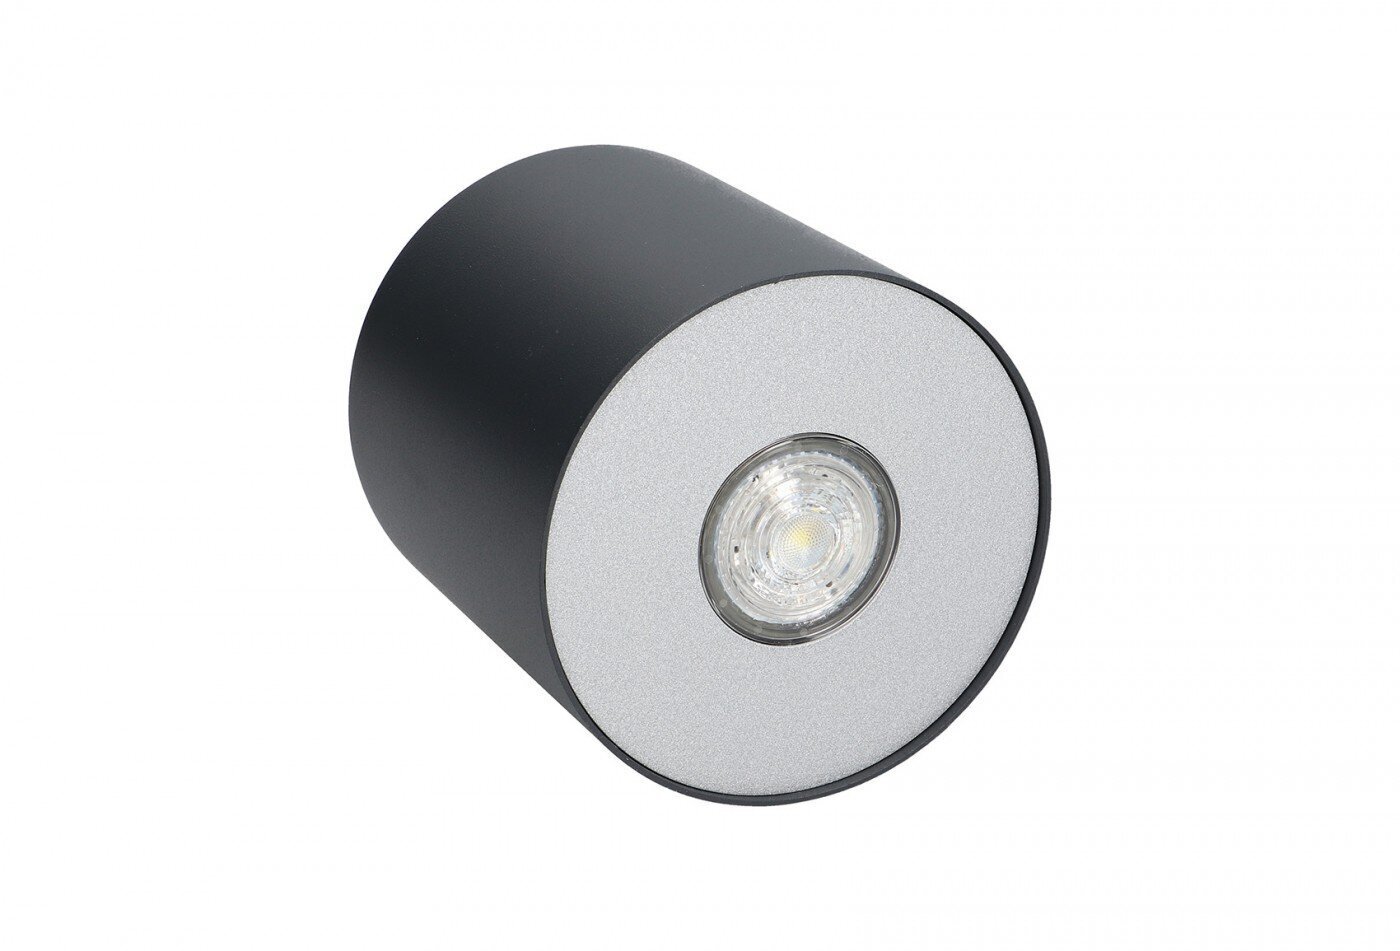 Nowodvorski lubinis šviestuvas Point 6007 kaina ir informacija | Lubiniai šviestuvai | pigu.lt